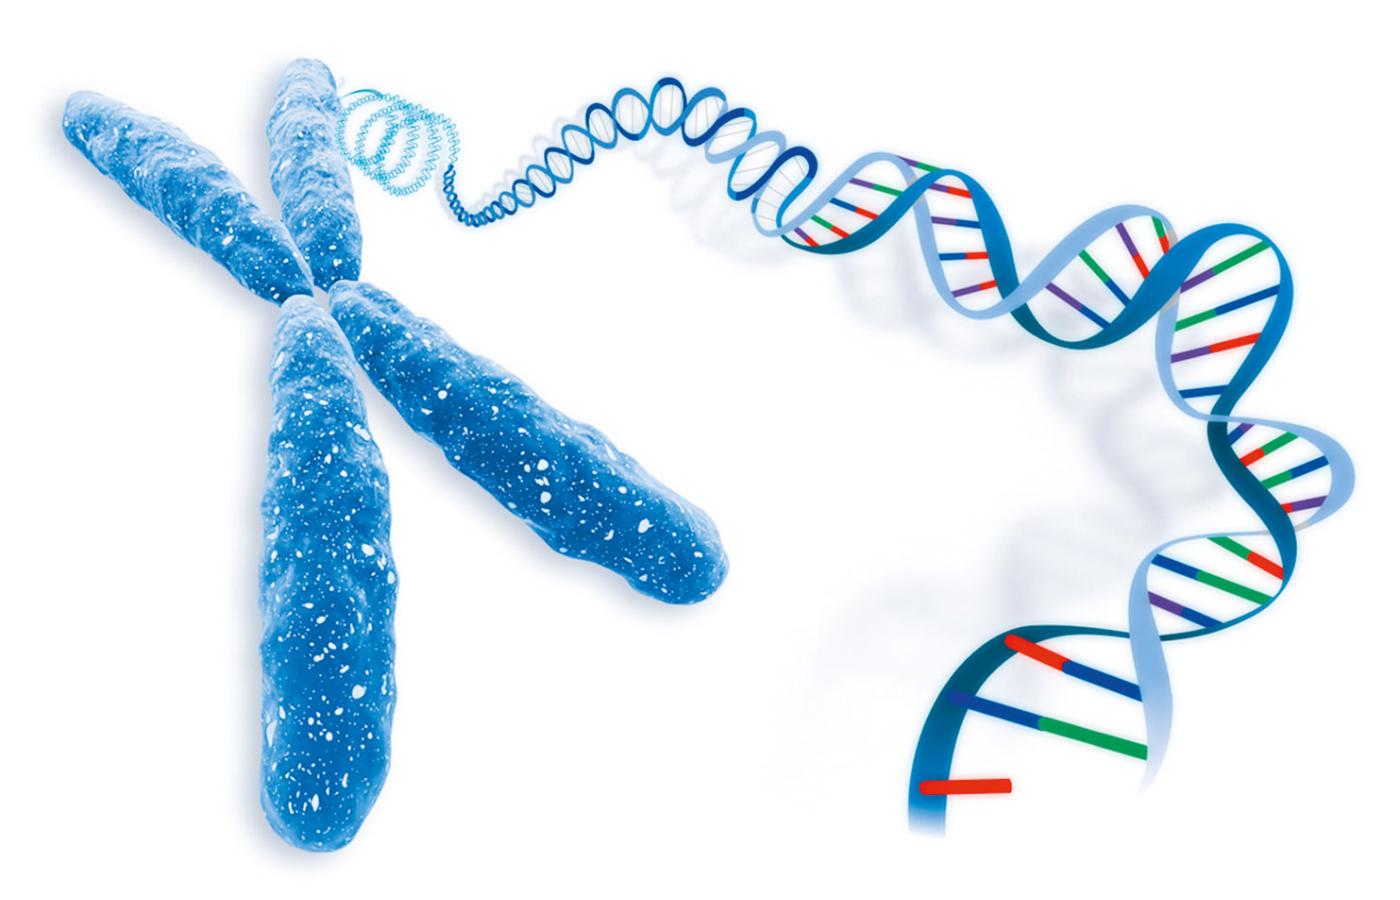 CRISPR/Cas można wykorzystać jako tanie, szybkie i niezwykle precyzyjne narzędzie inżynierii genetycznej.